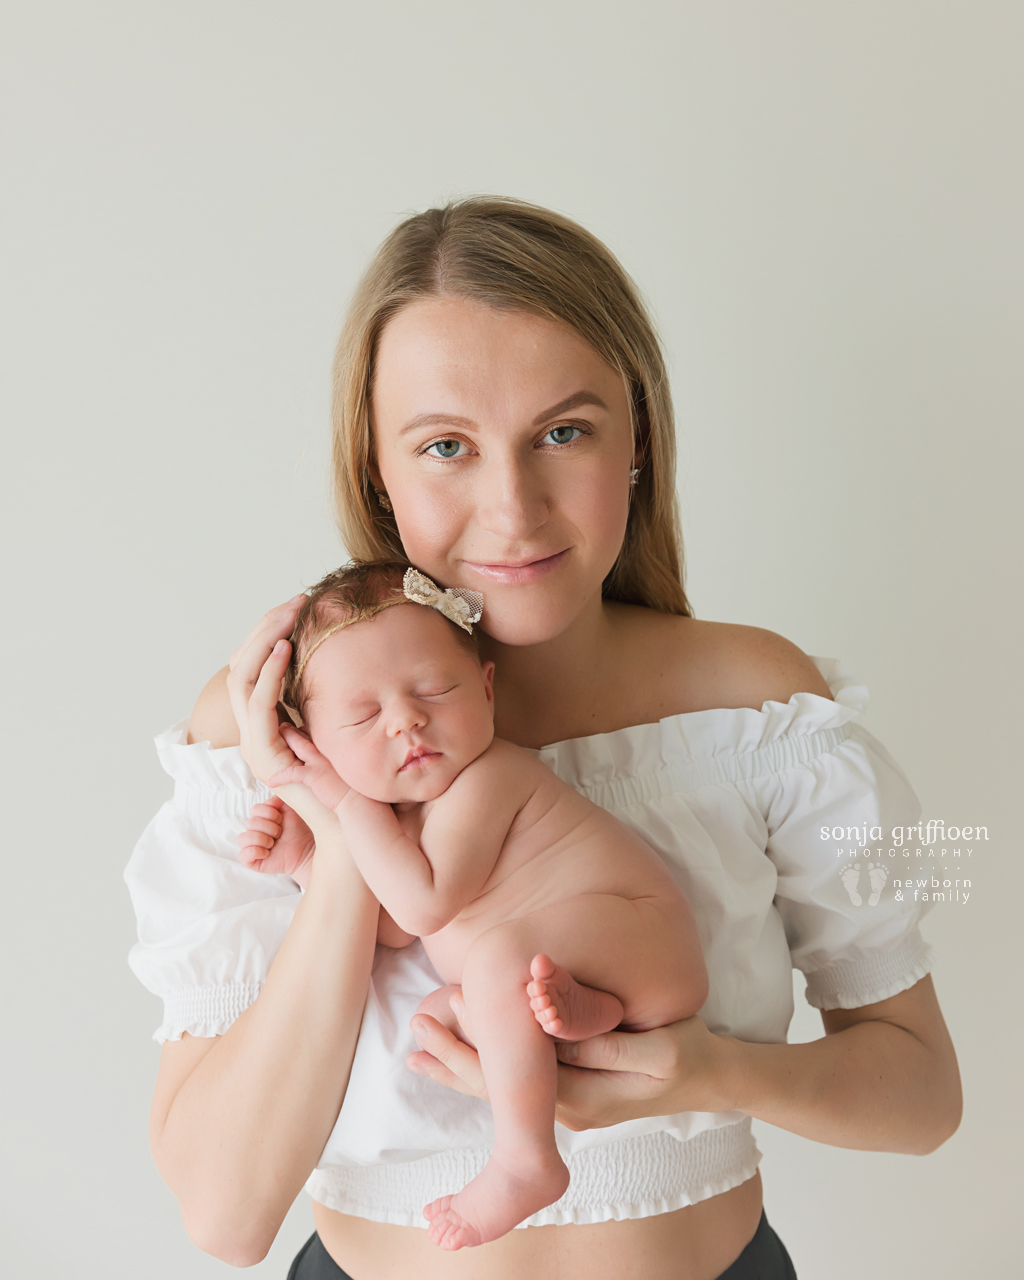 Michelle-Ivy-Newborn-Brisbane-Newborn-Photographer-Sonja-Griffioen-02.jpg